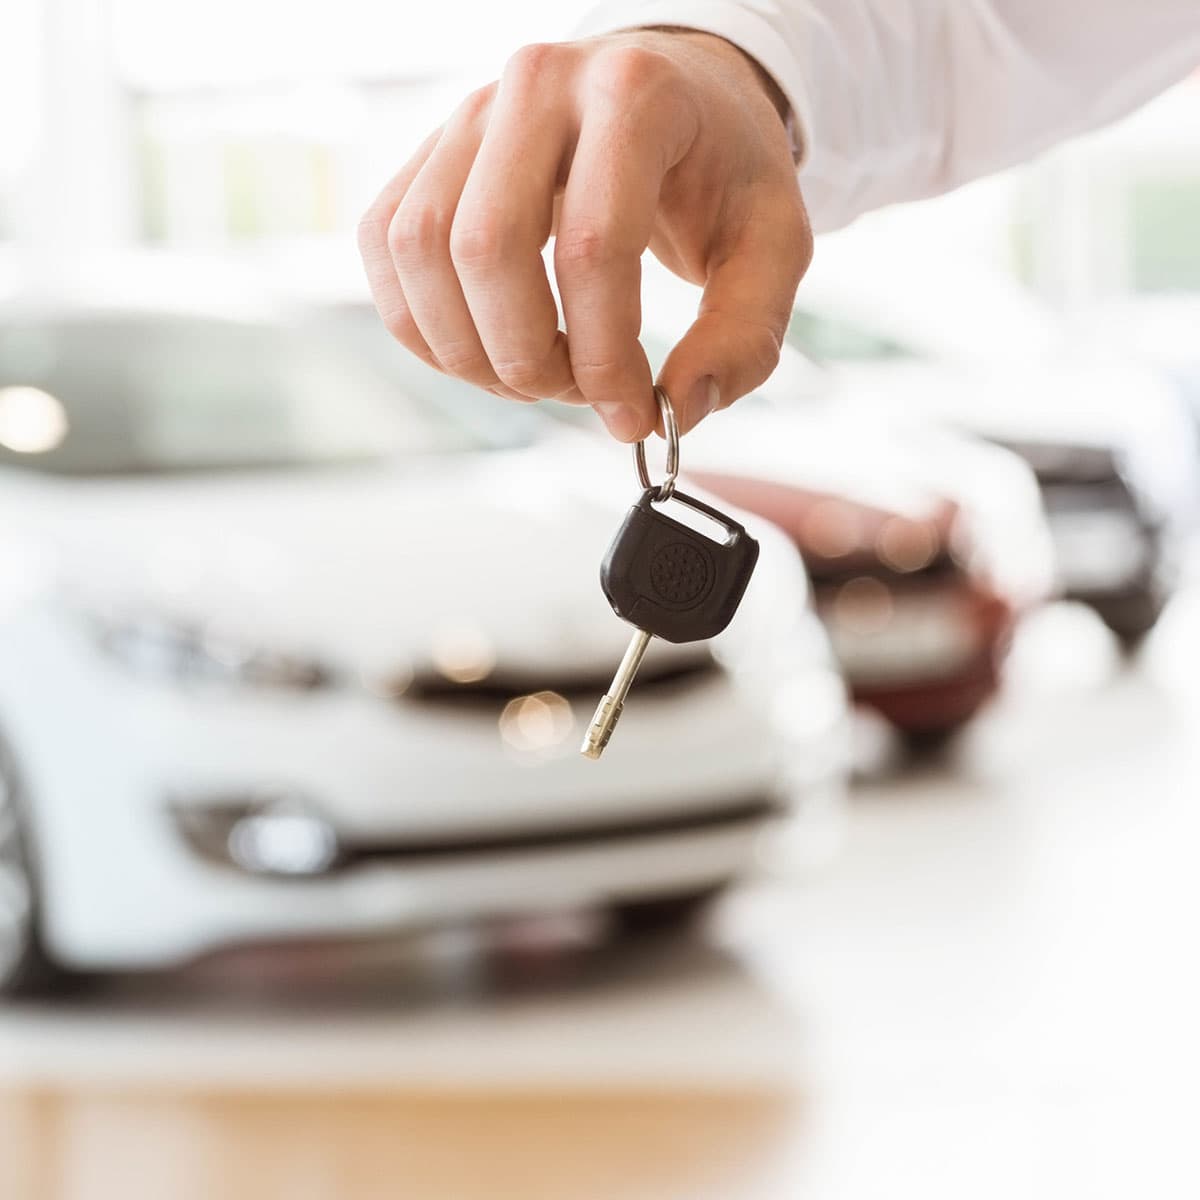 車を売却しても任意保険の等級は引き継げる ケース別に手続き方法を解説